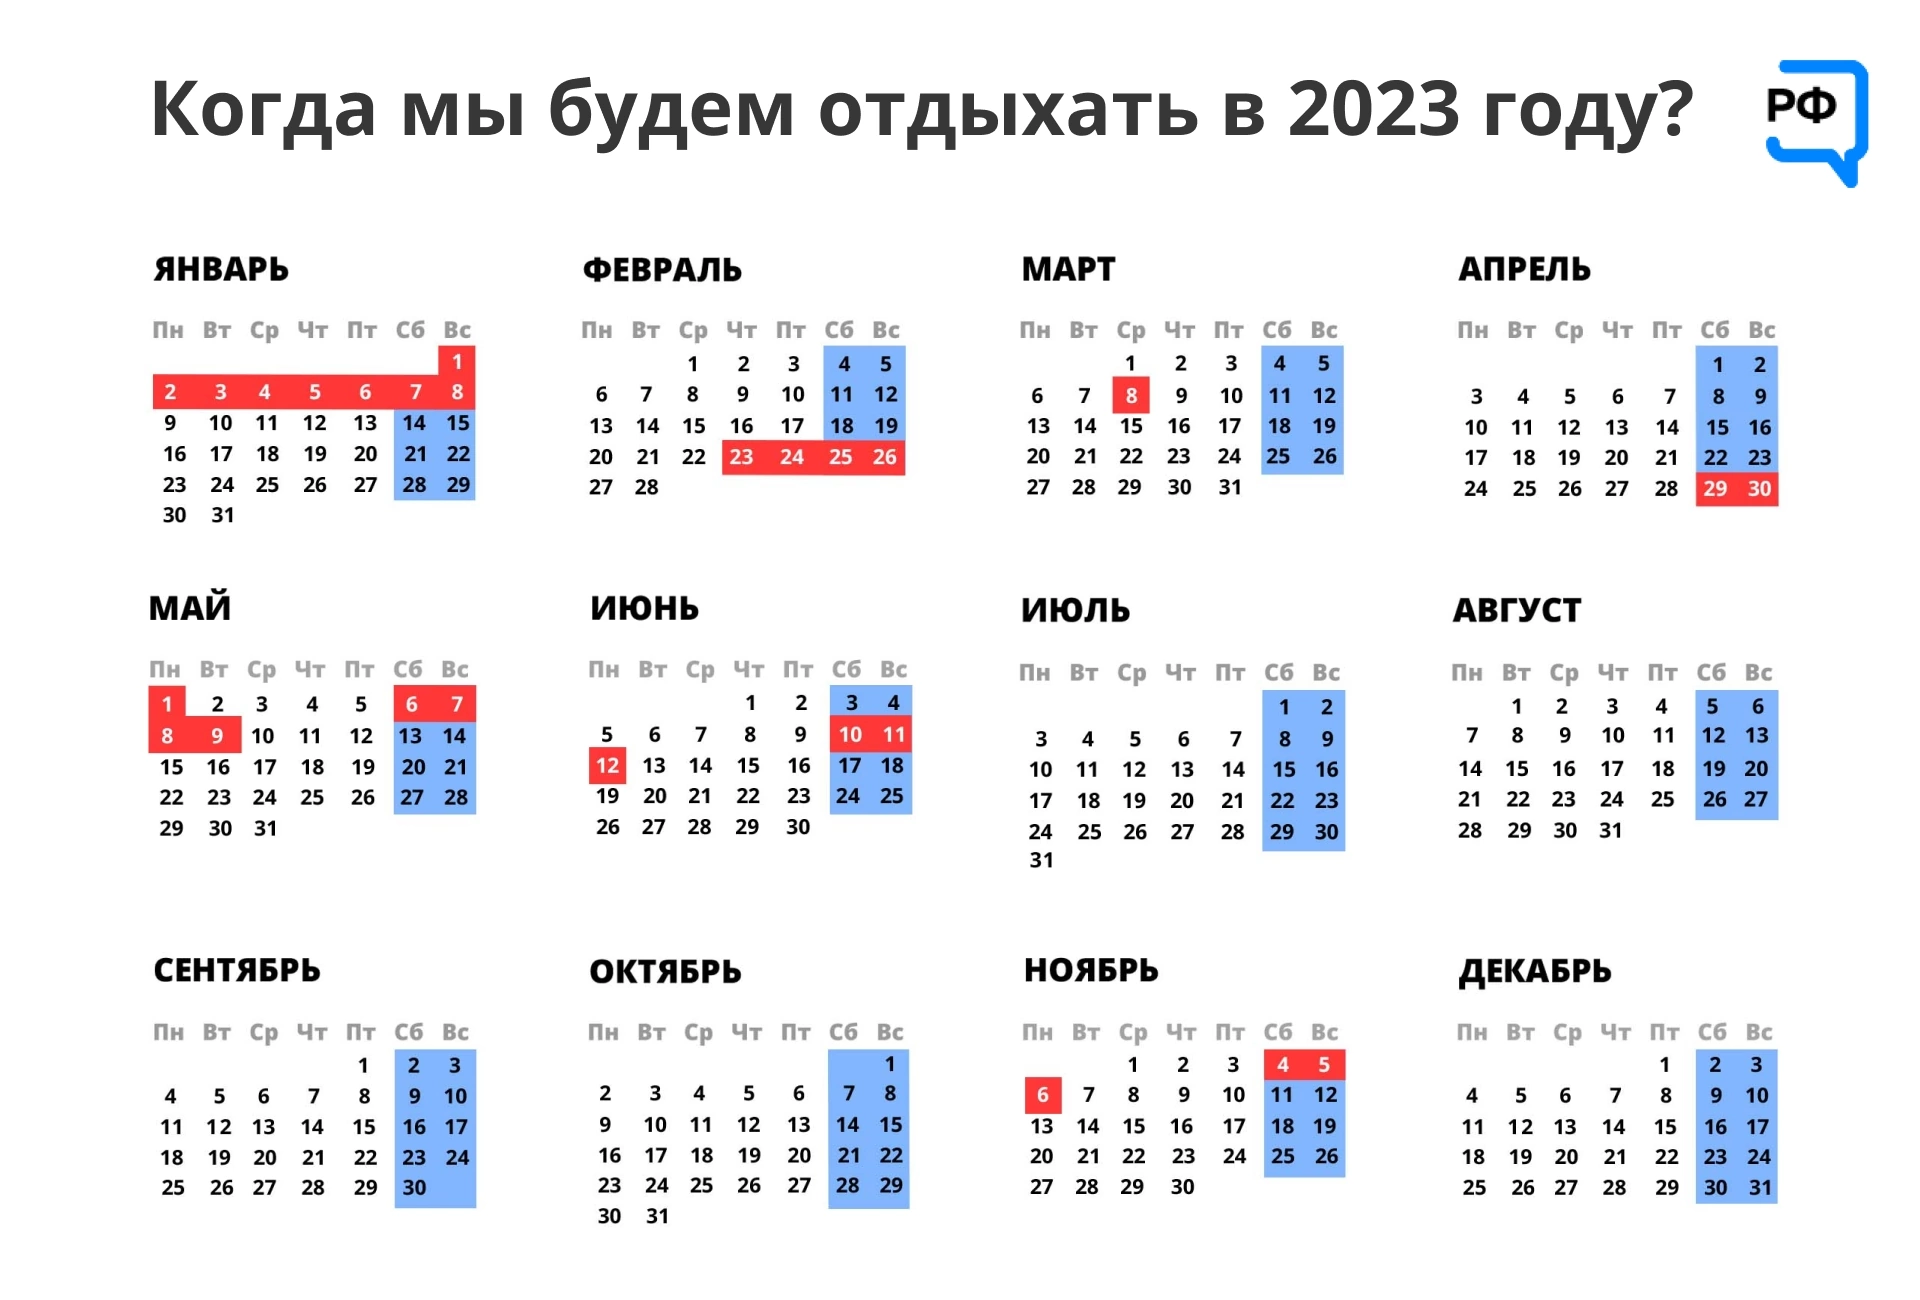 Как работаем и отдыхаем в апреле. Выходные и праздничные дни в феврале 2023 года в России. Календарь на 2023 год с праздниками. Календарные праздники на 2023 год. Календарь на 2023 год с праздниками и выходными.